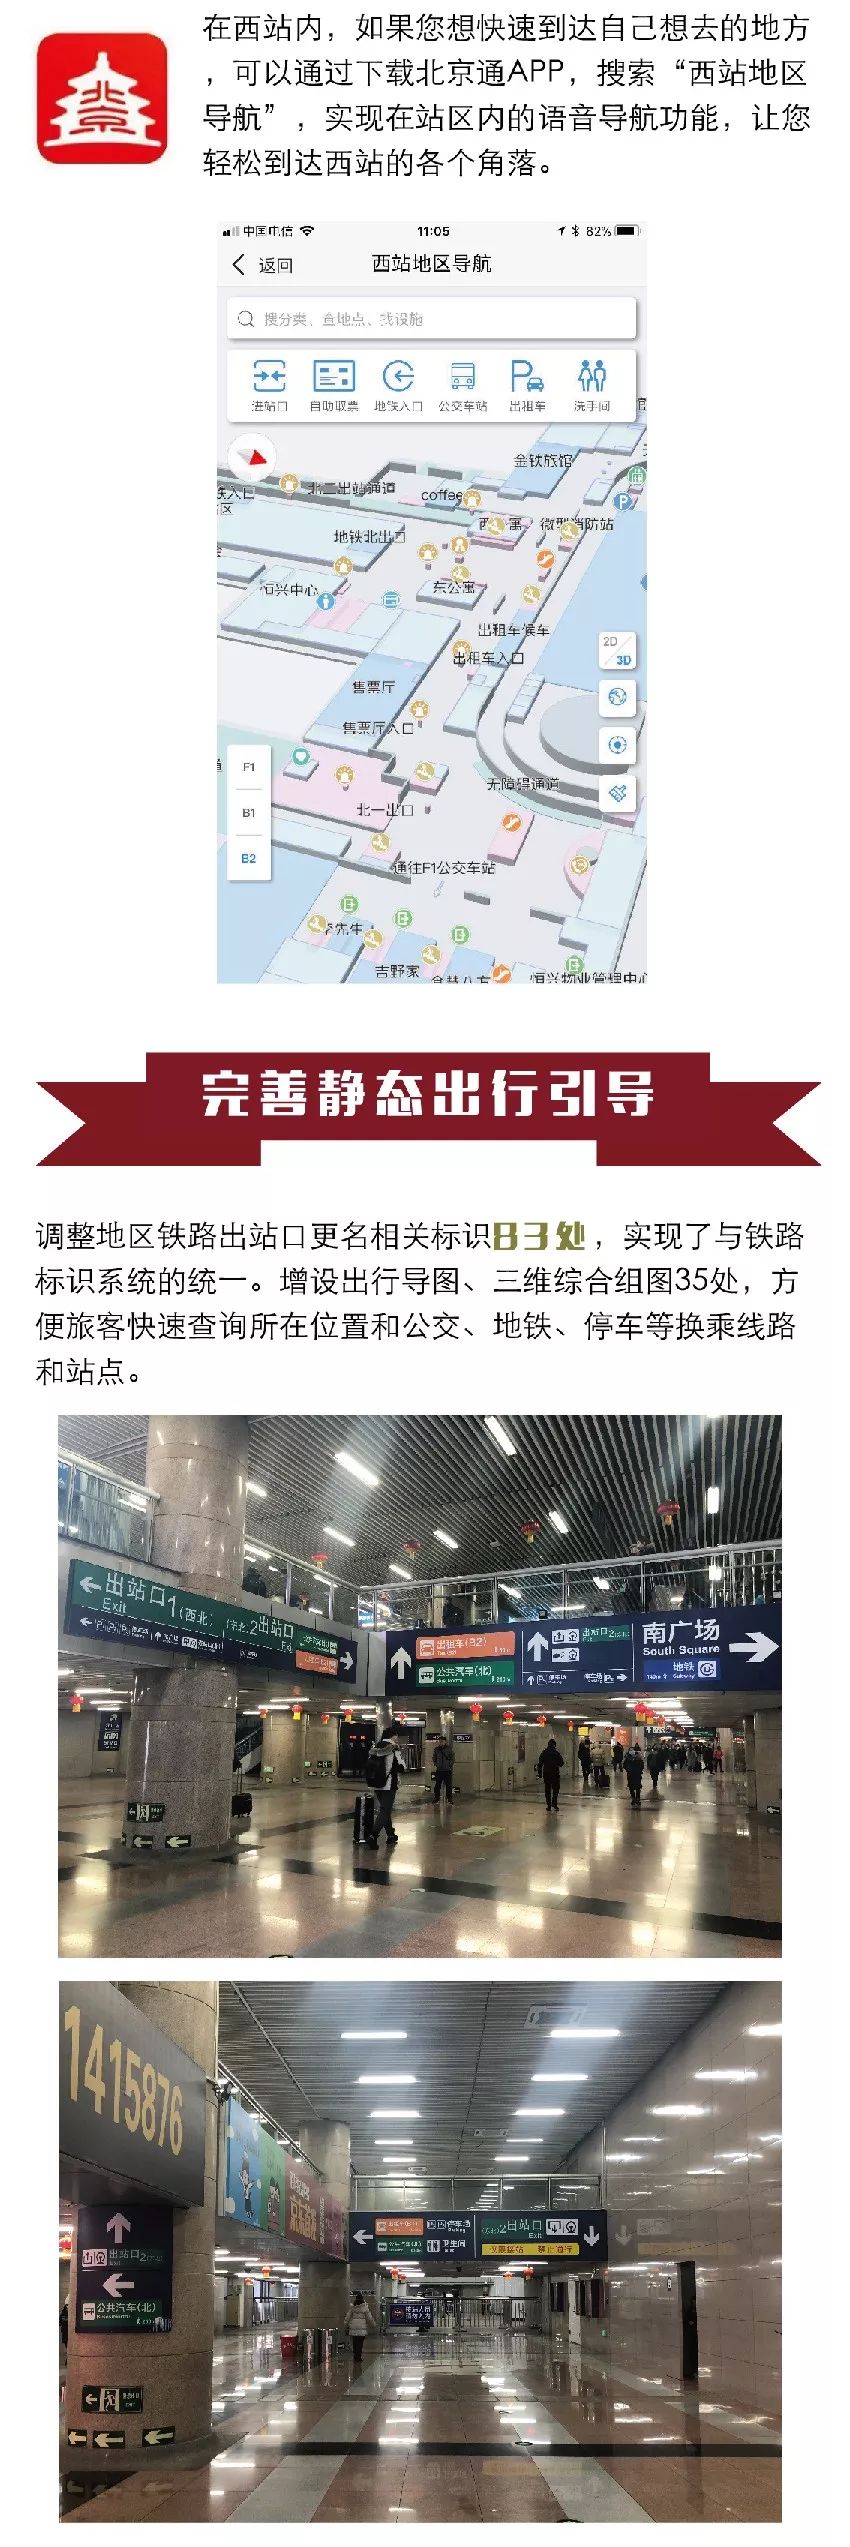 2019春运北京西站自助购票取票机、停车出行提示